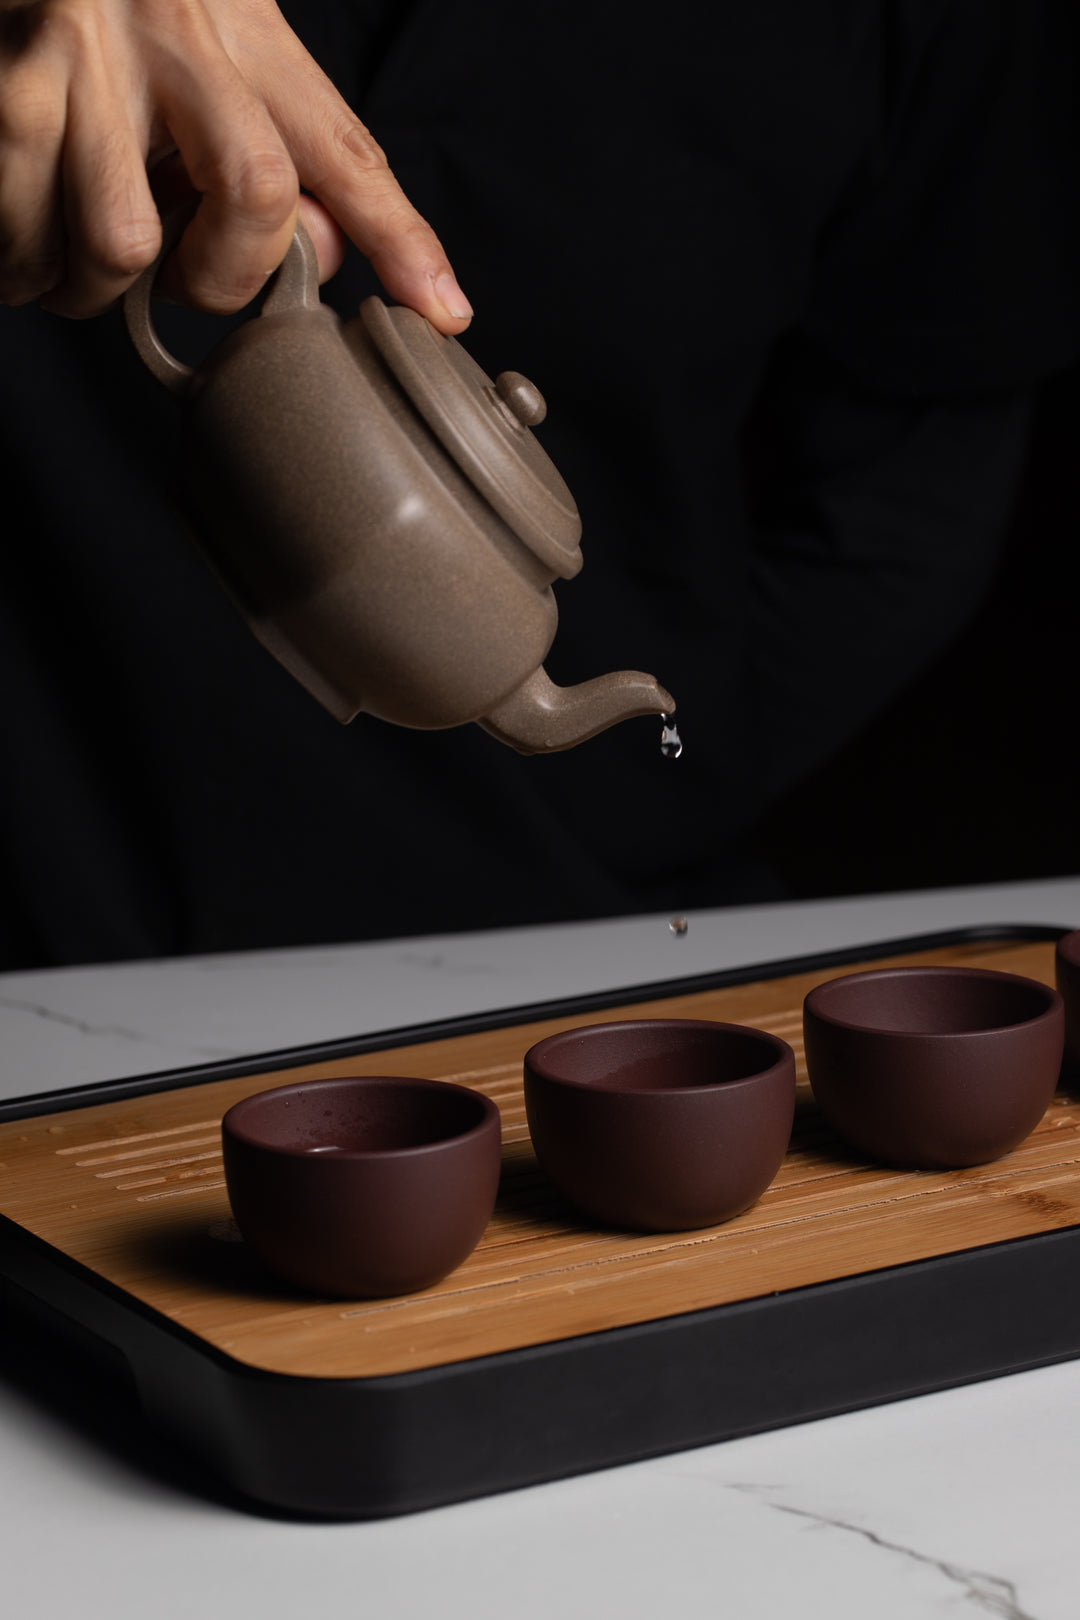 Zisha Tea Pot "Hexagon" (Liu Fang Hu) 六方壶